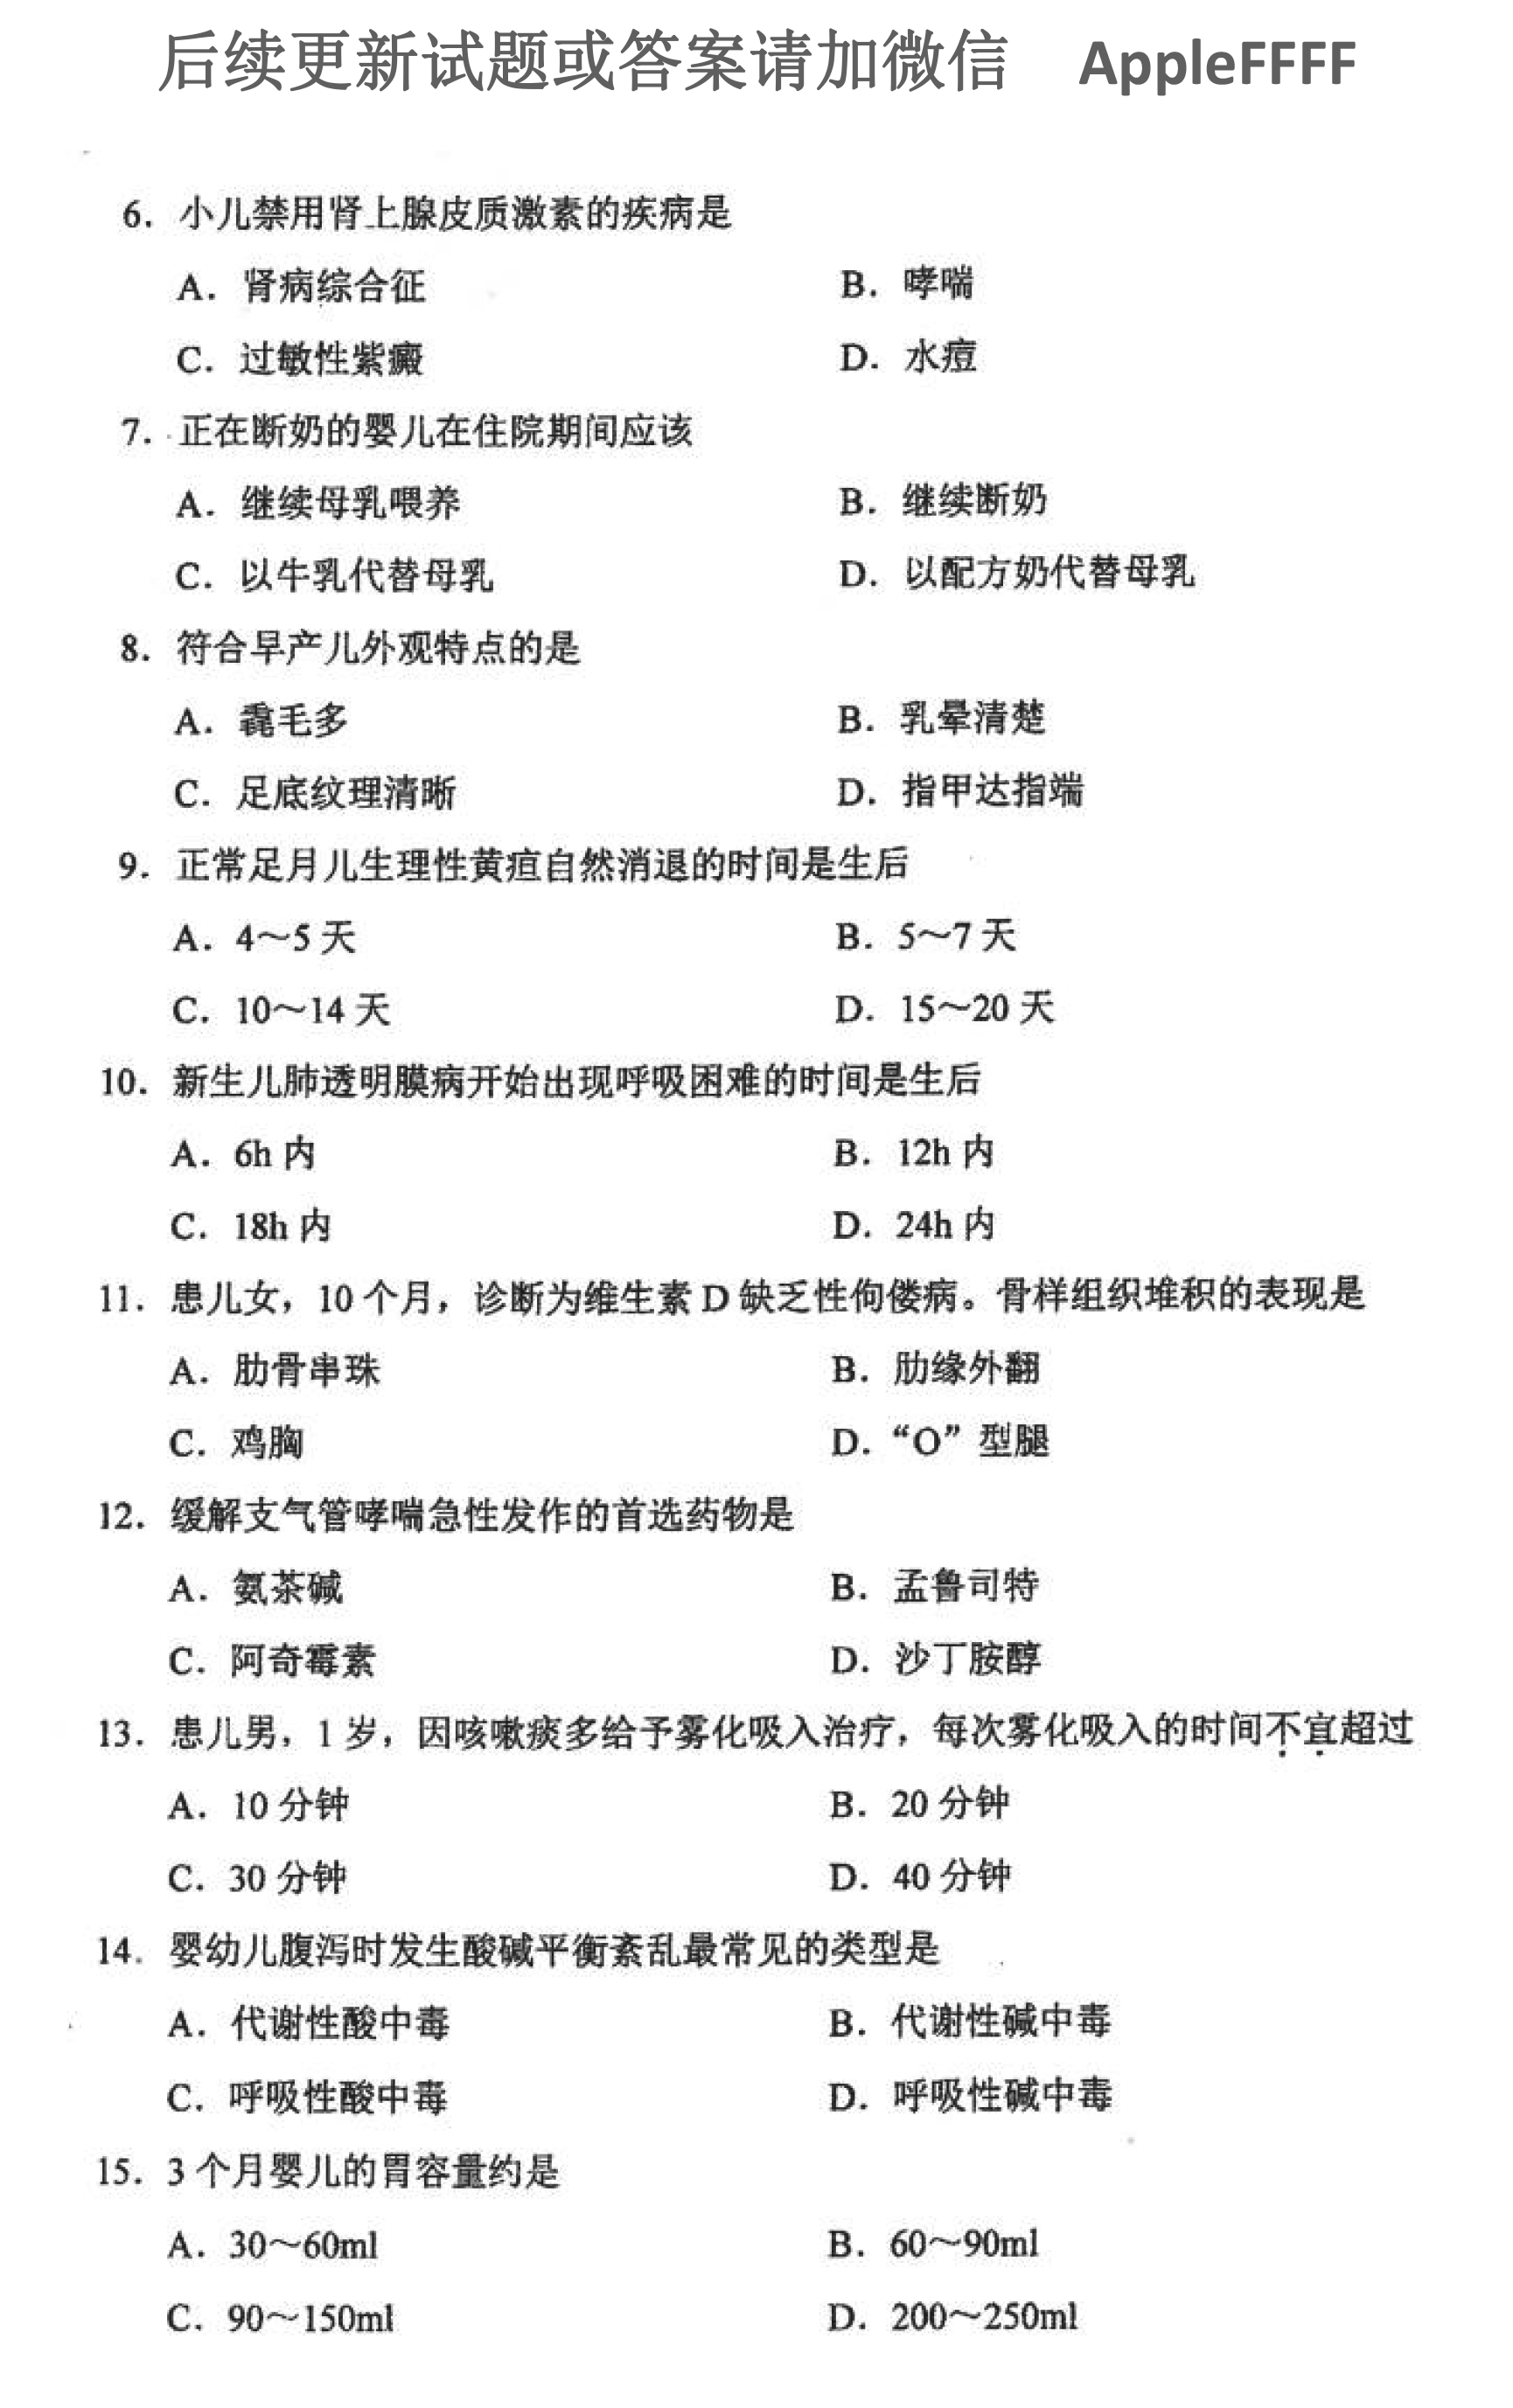 贵州省2021年10月自学考试儿科护理学（二）03011真题及答案